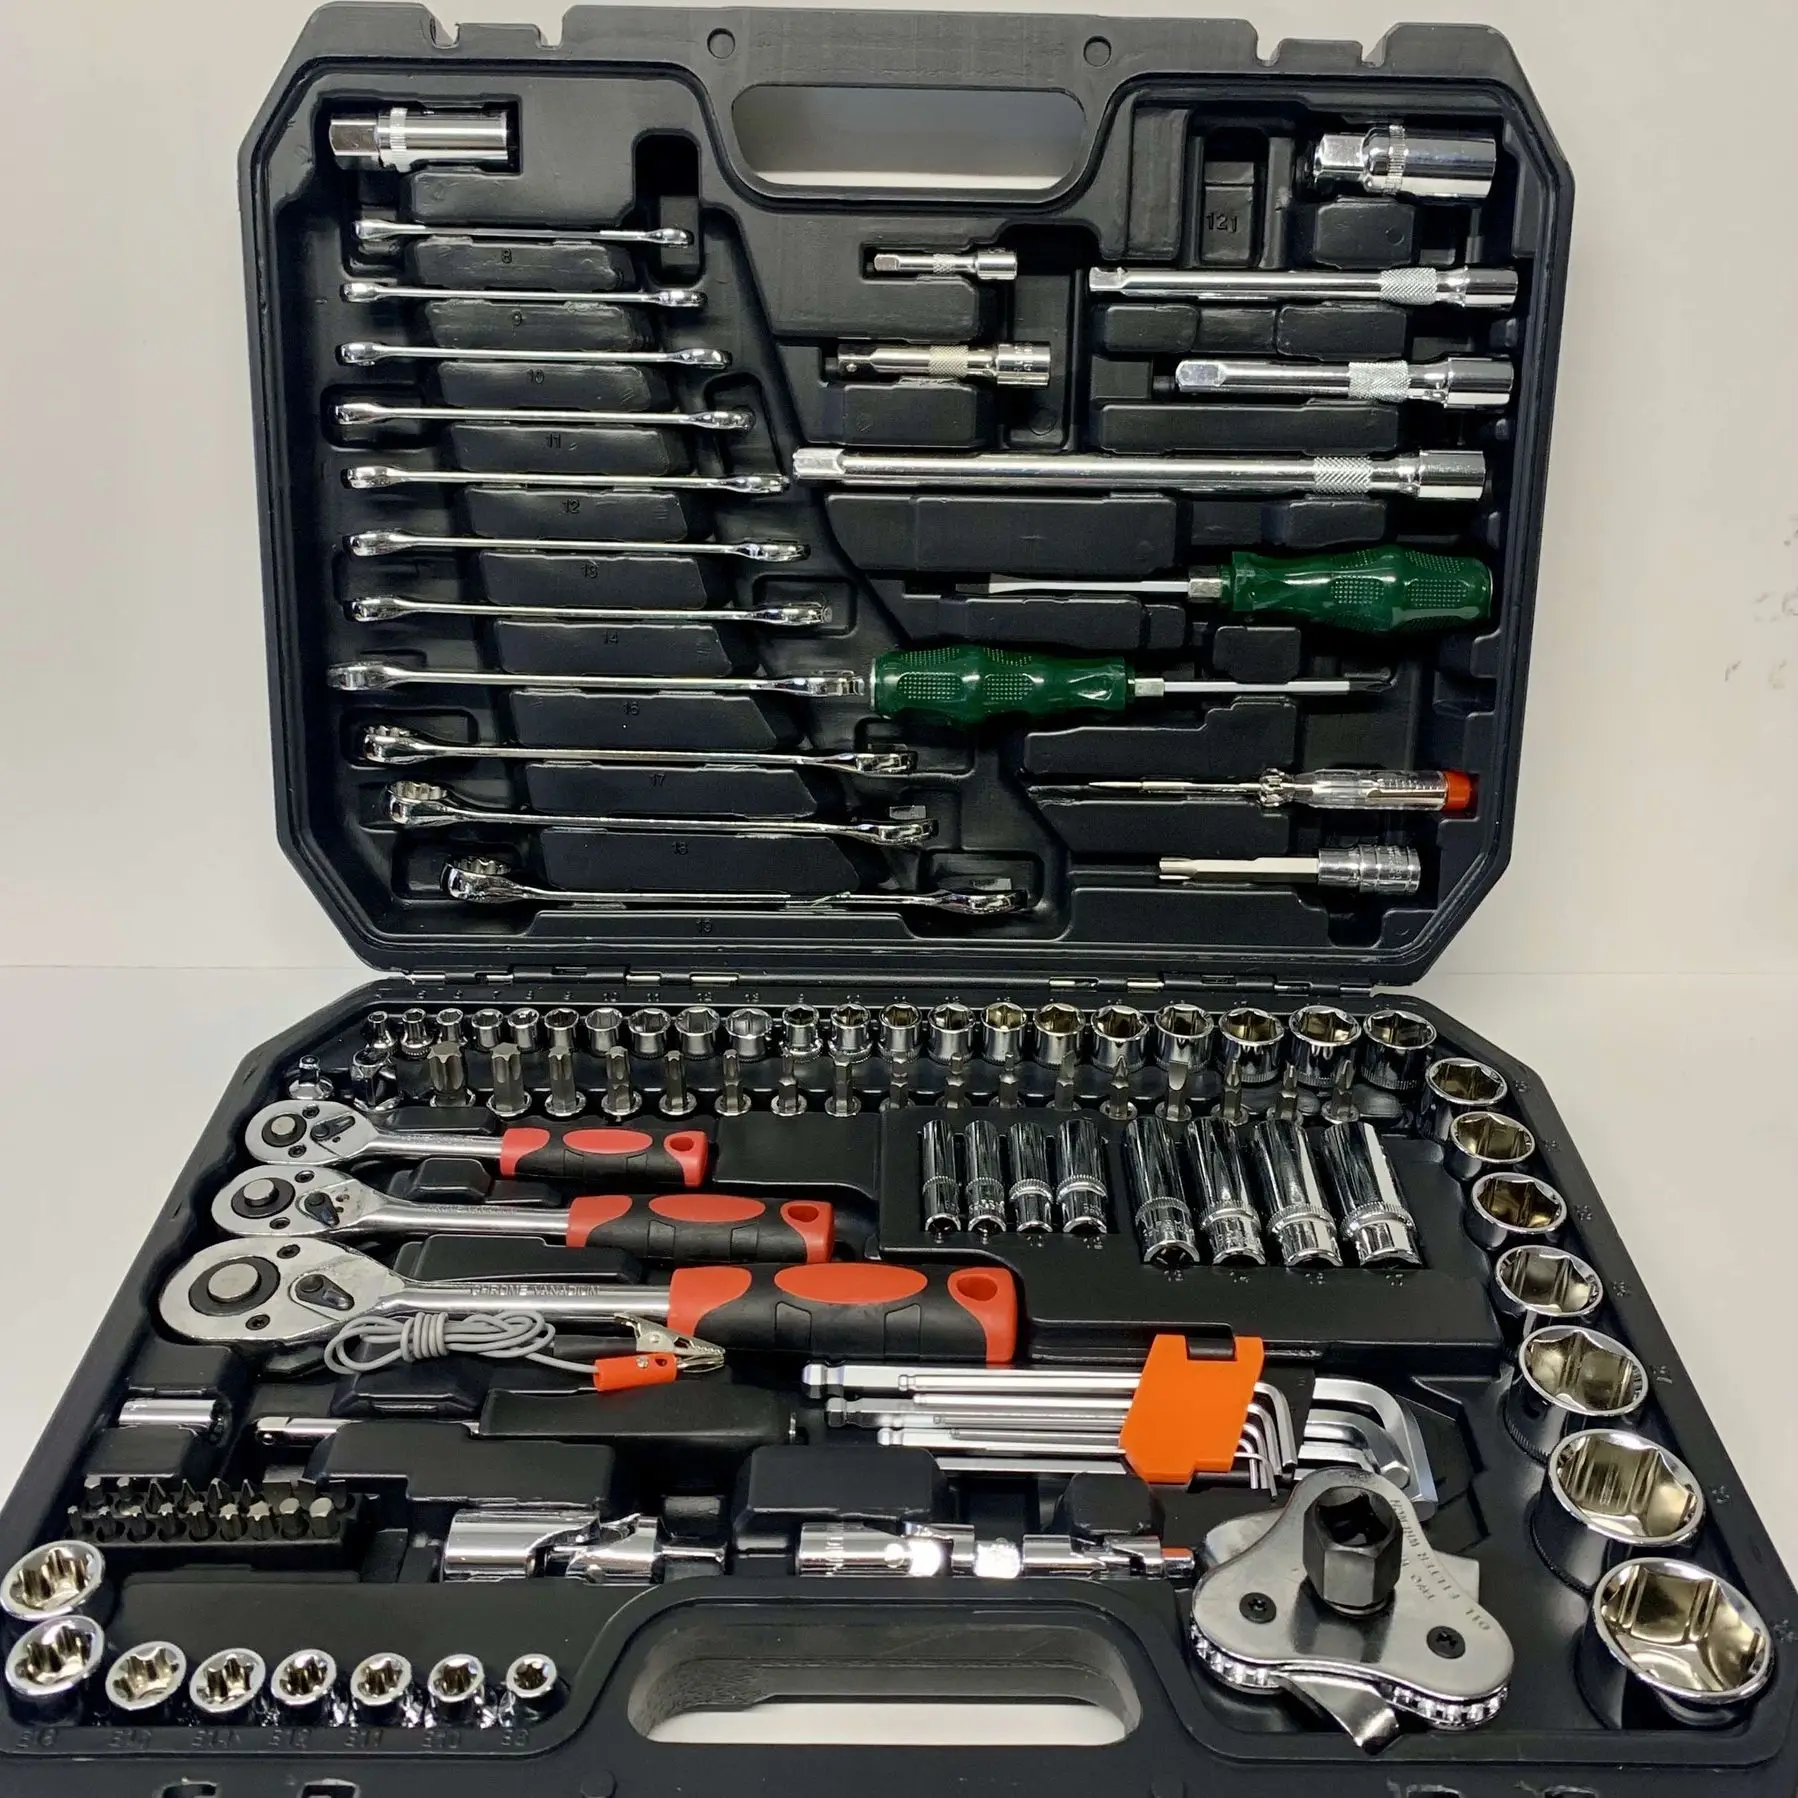  инструментов в кейсе набор головок и ключей для ремонта и монтажа .